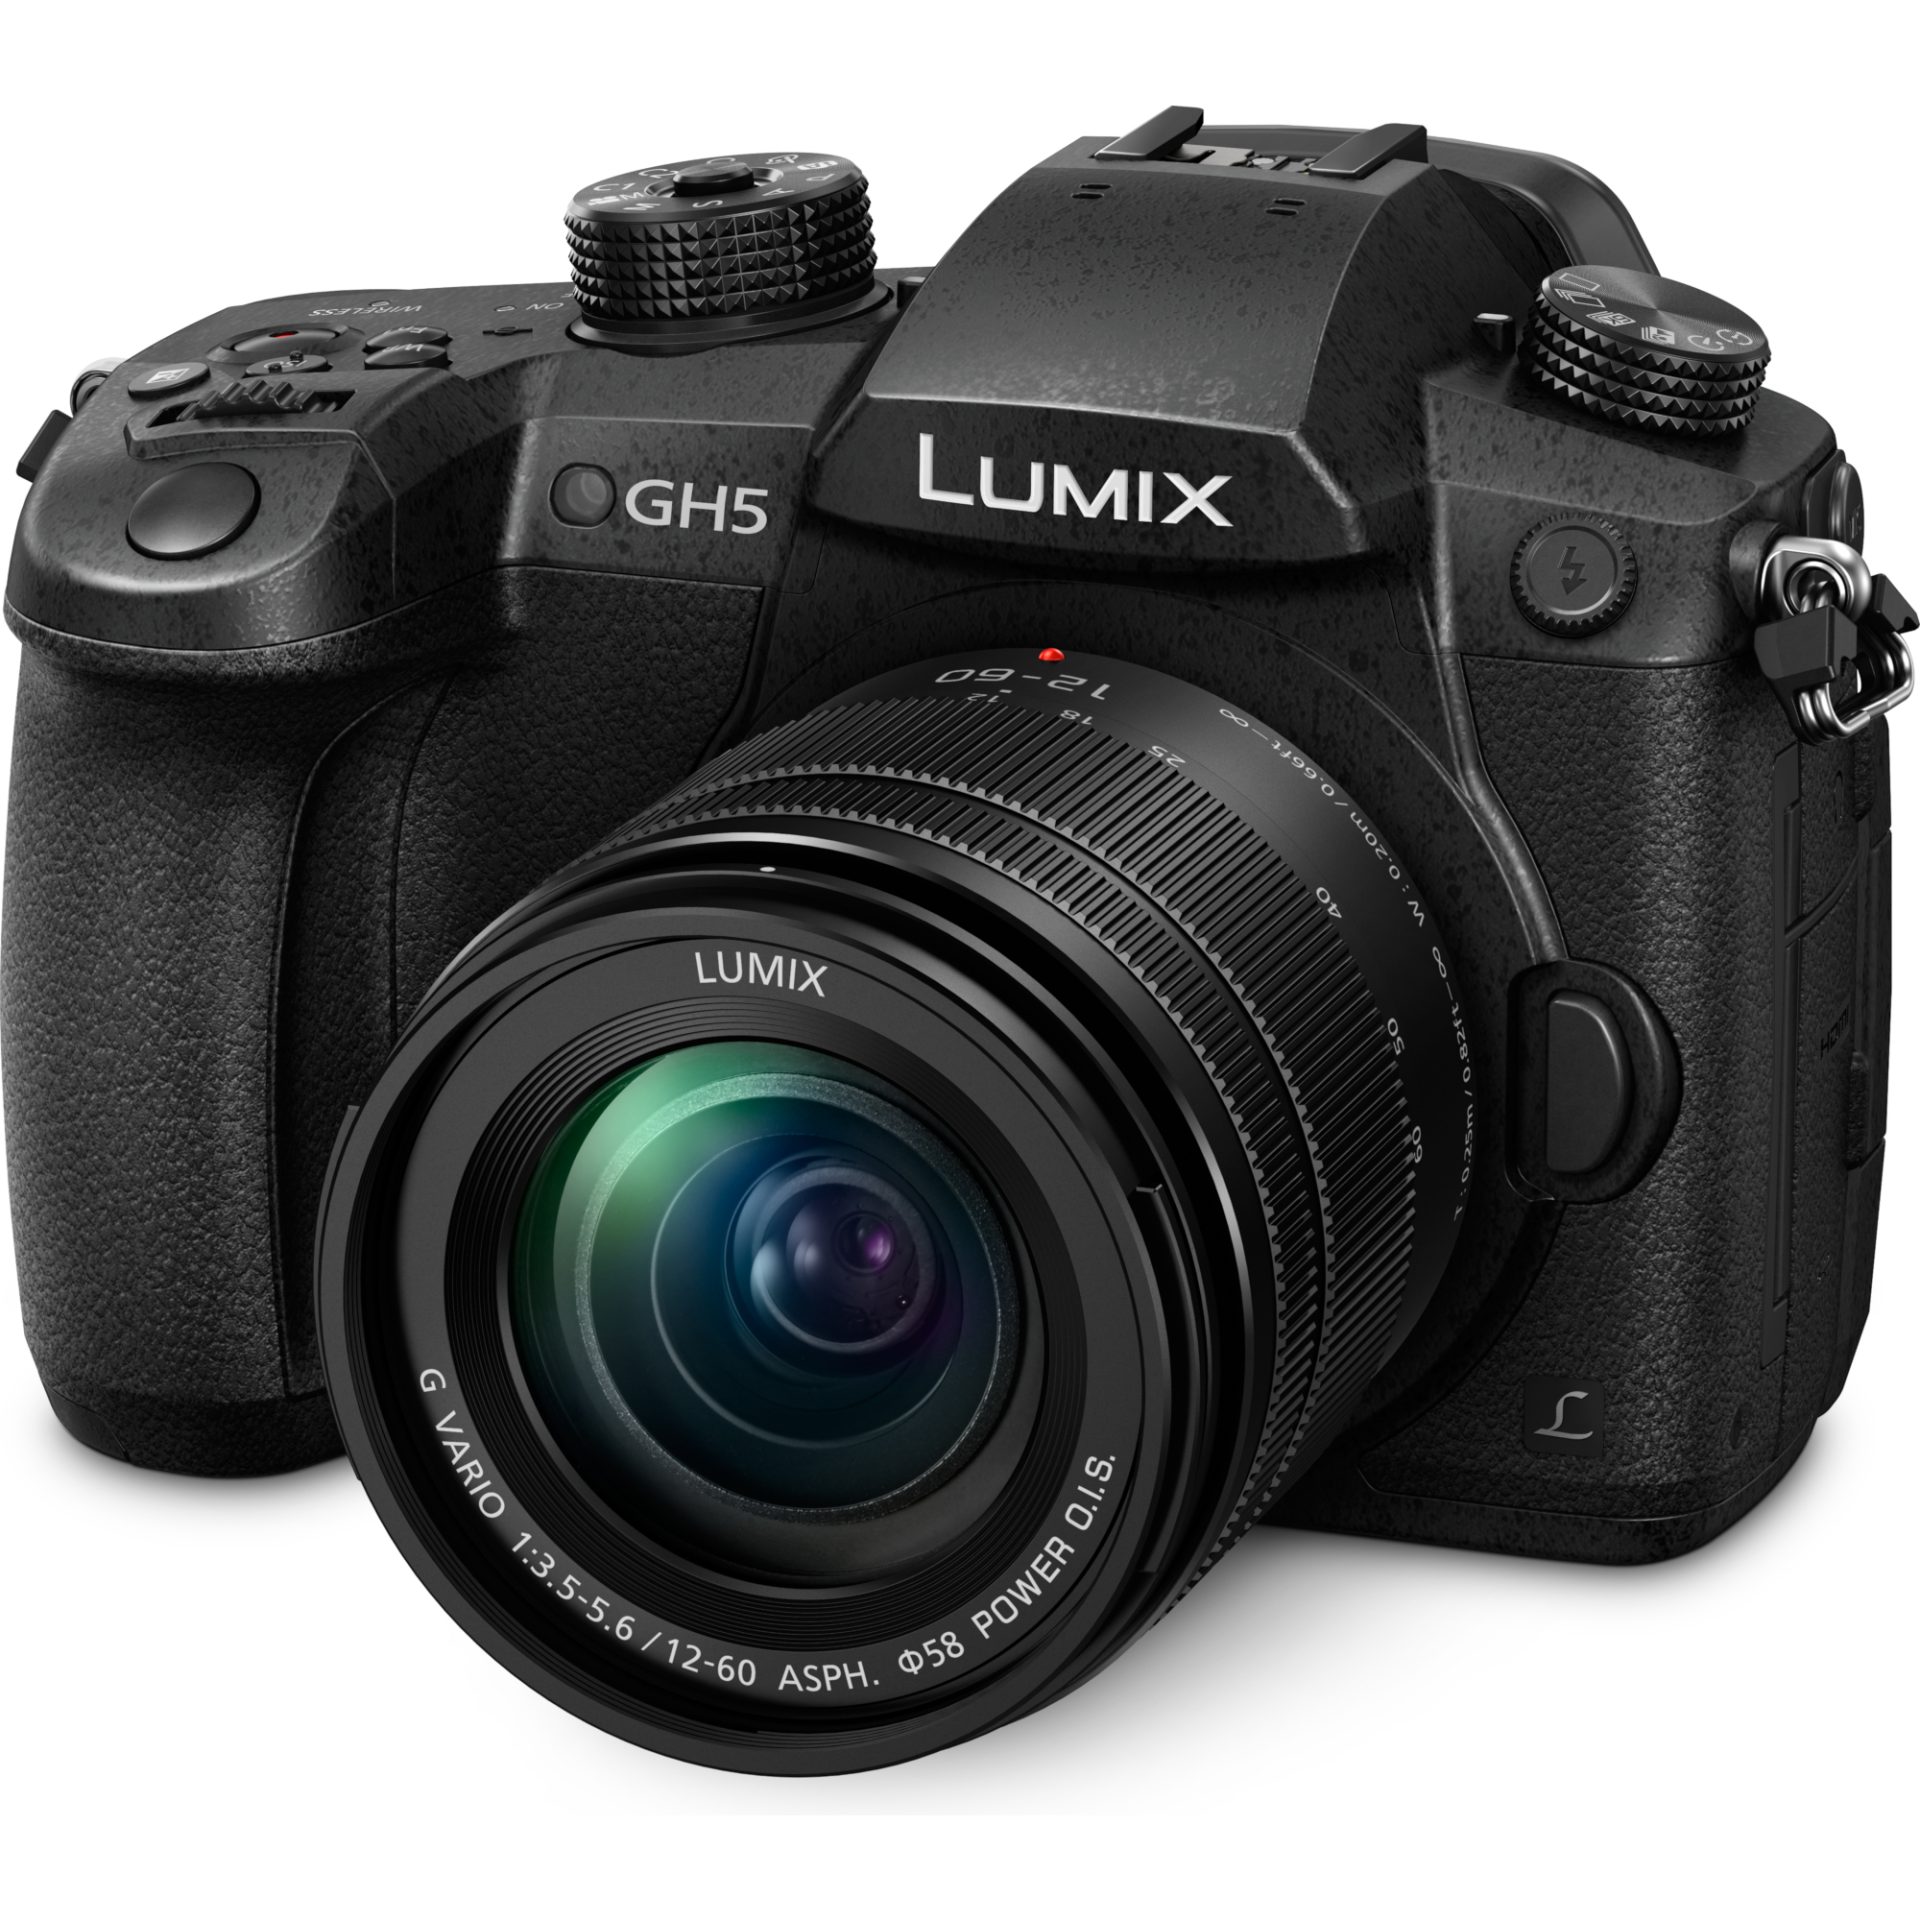 Panasonic DC-GH5M Lumix systémový fotoaparát + objektiv H-FS12060 12-60mm, F3.5-5.6 (Live MOS 20.3MP, 4K/60p video, 6K PHOTO, LVF OLED hledáček, DSLM)